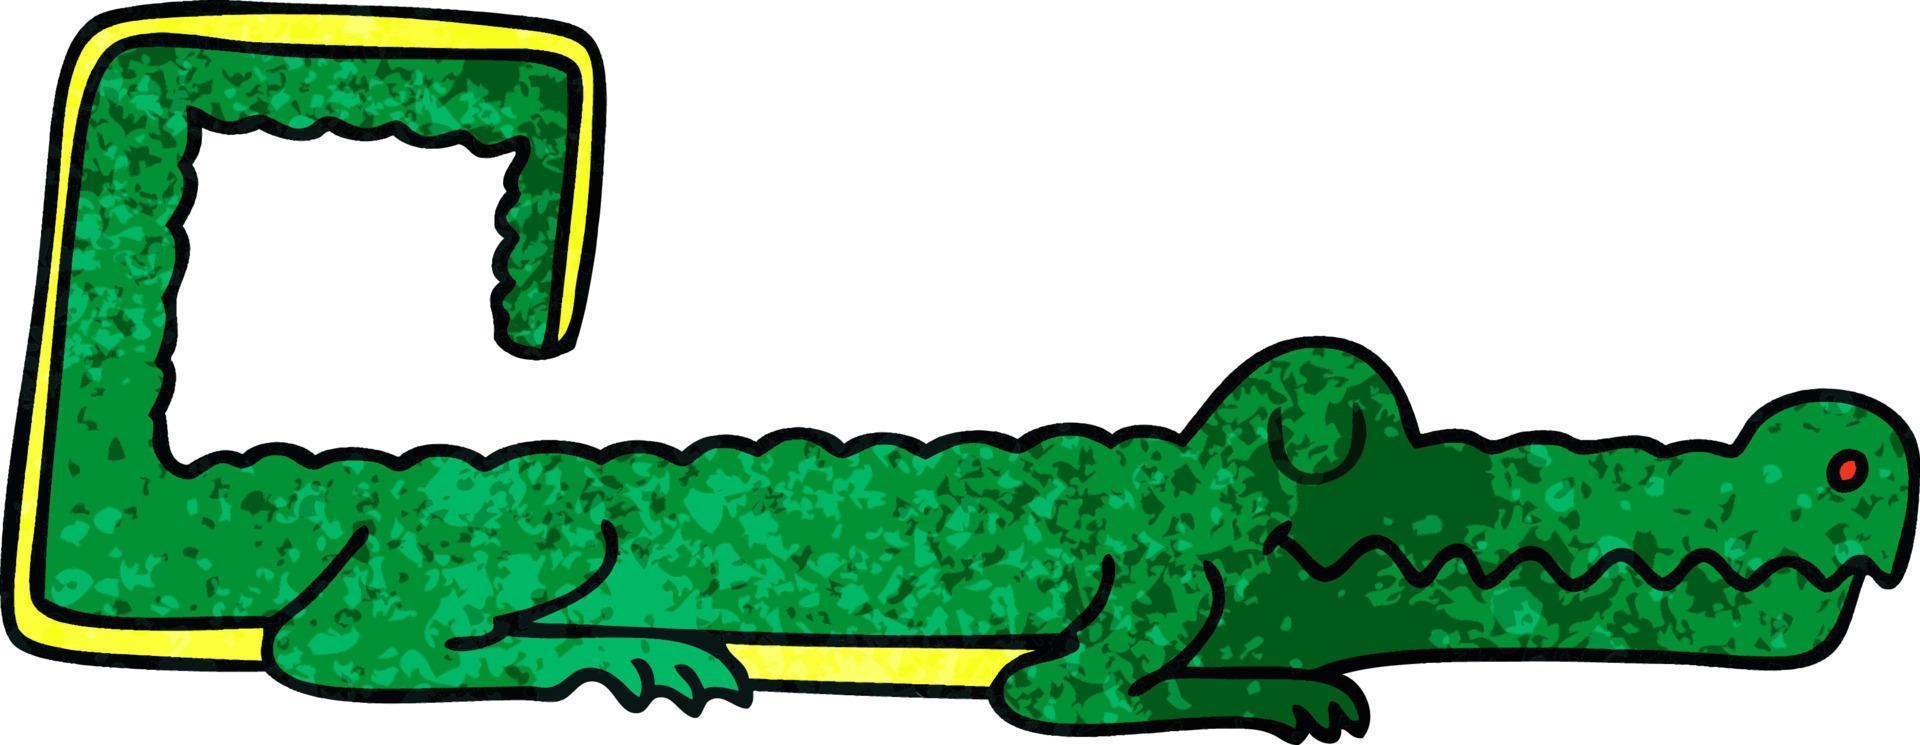 crocodile de bande dessinée dessiné à la main excentrique vecteur